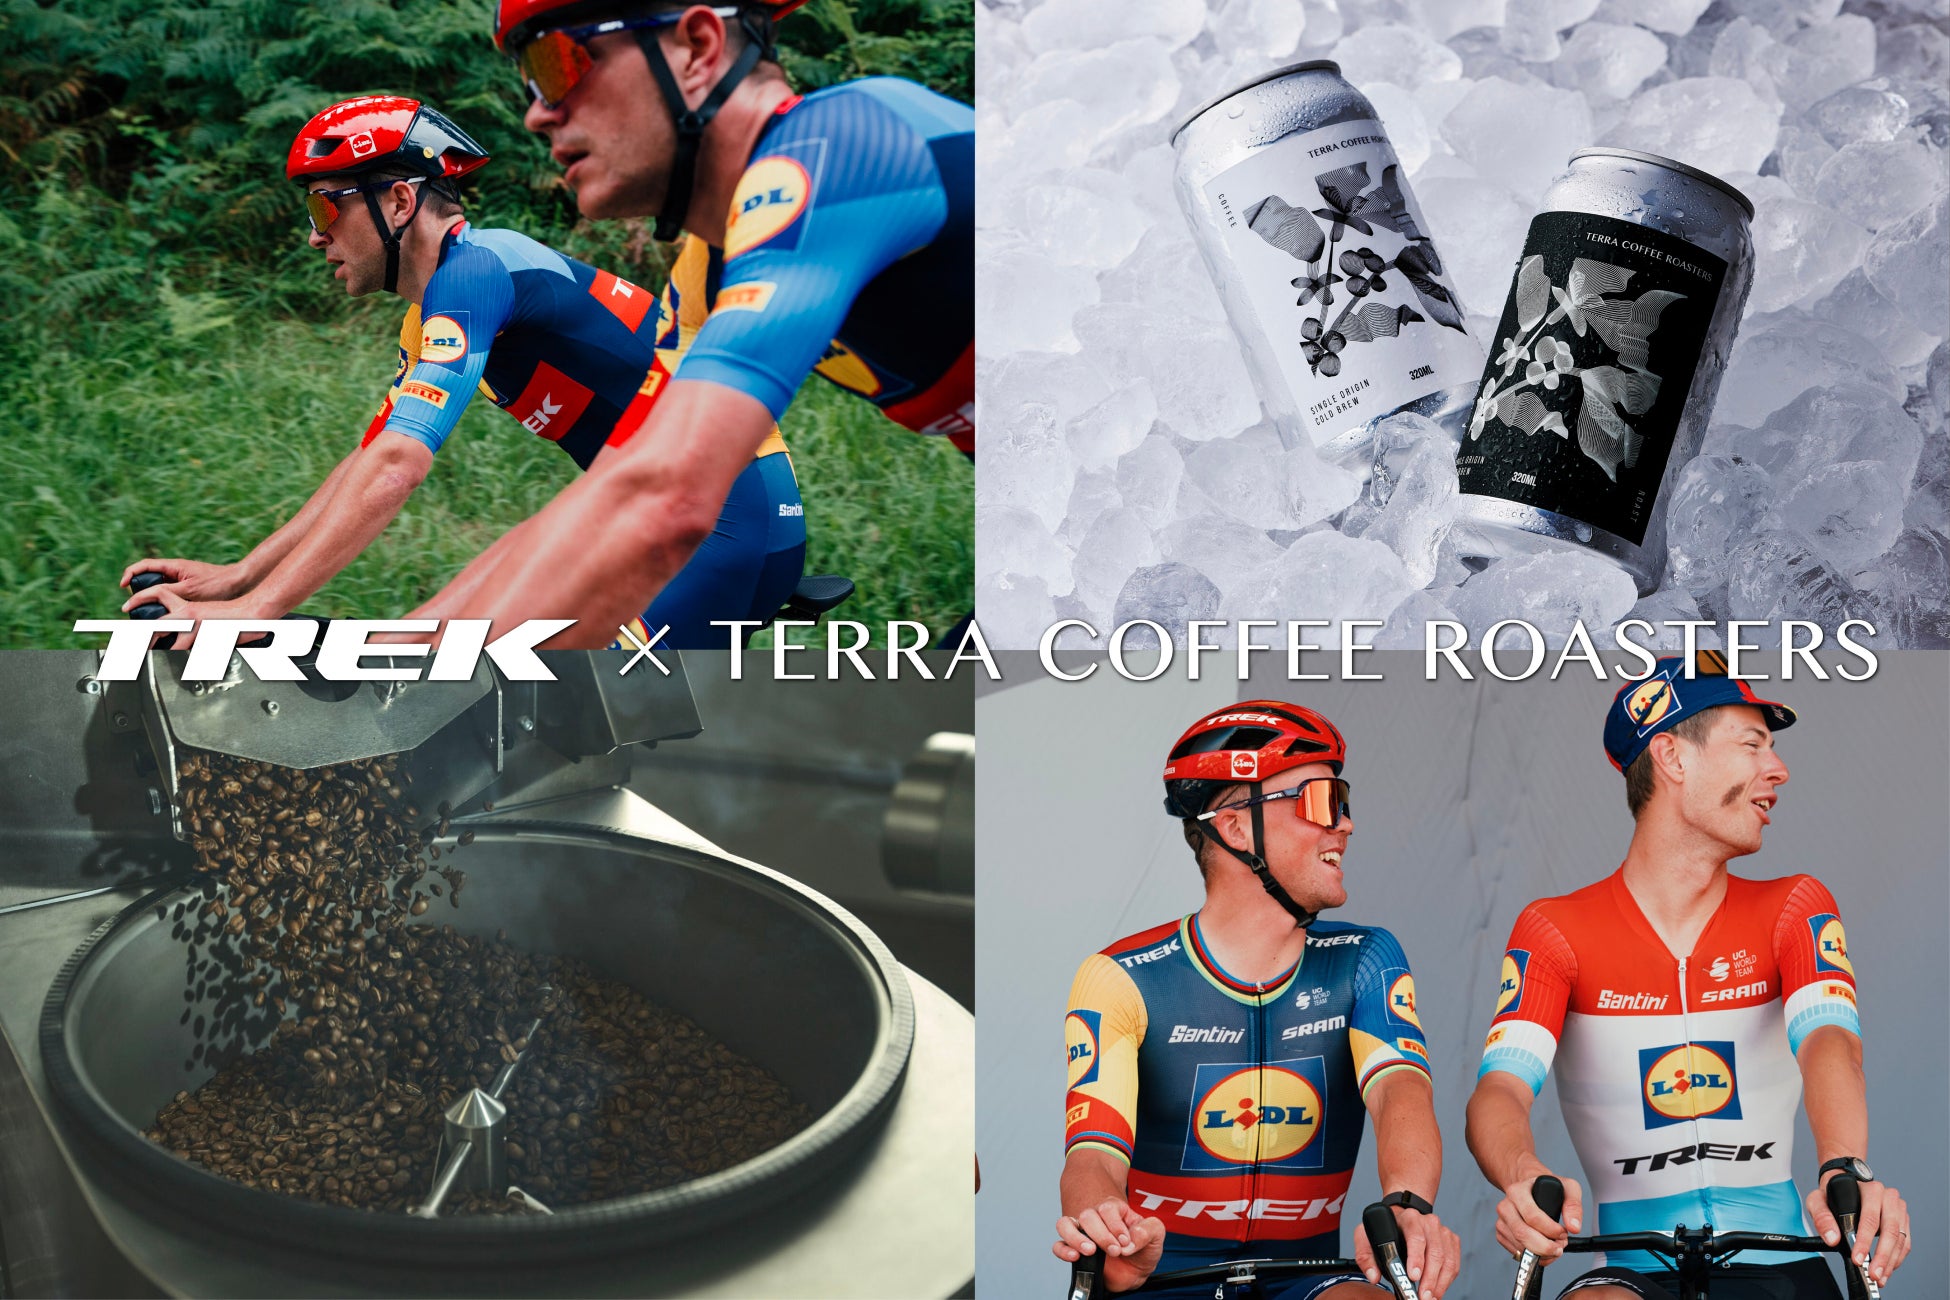 TERRA COFFEE ROASTERSがトレック・ジャパンとコラボ。ジャパンカップでコーヒーとサイクリングを楽しむ特別な体験を提供します。先着10名様にコラボ豆瓶（100g）をプレゼント。